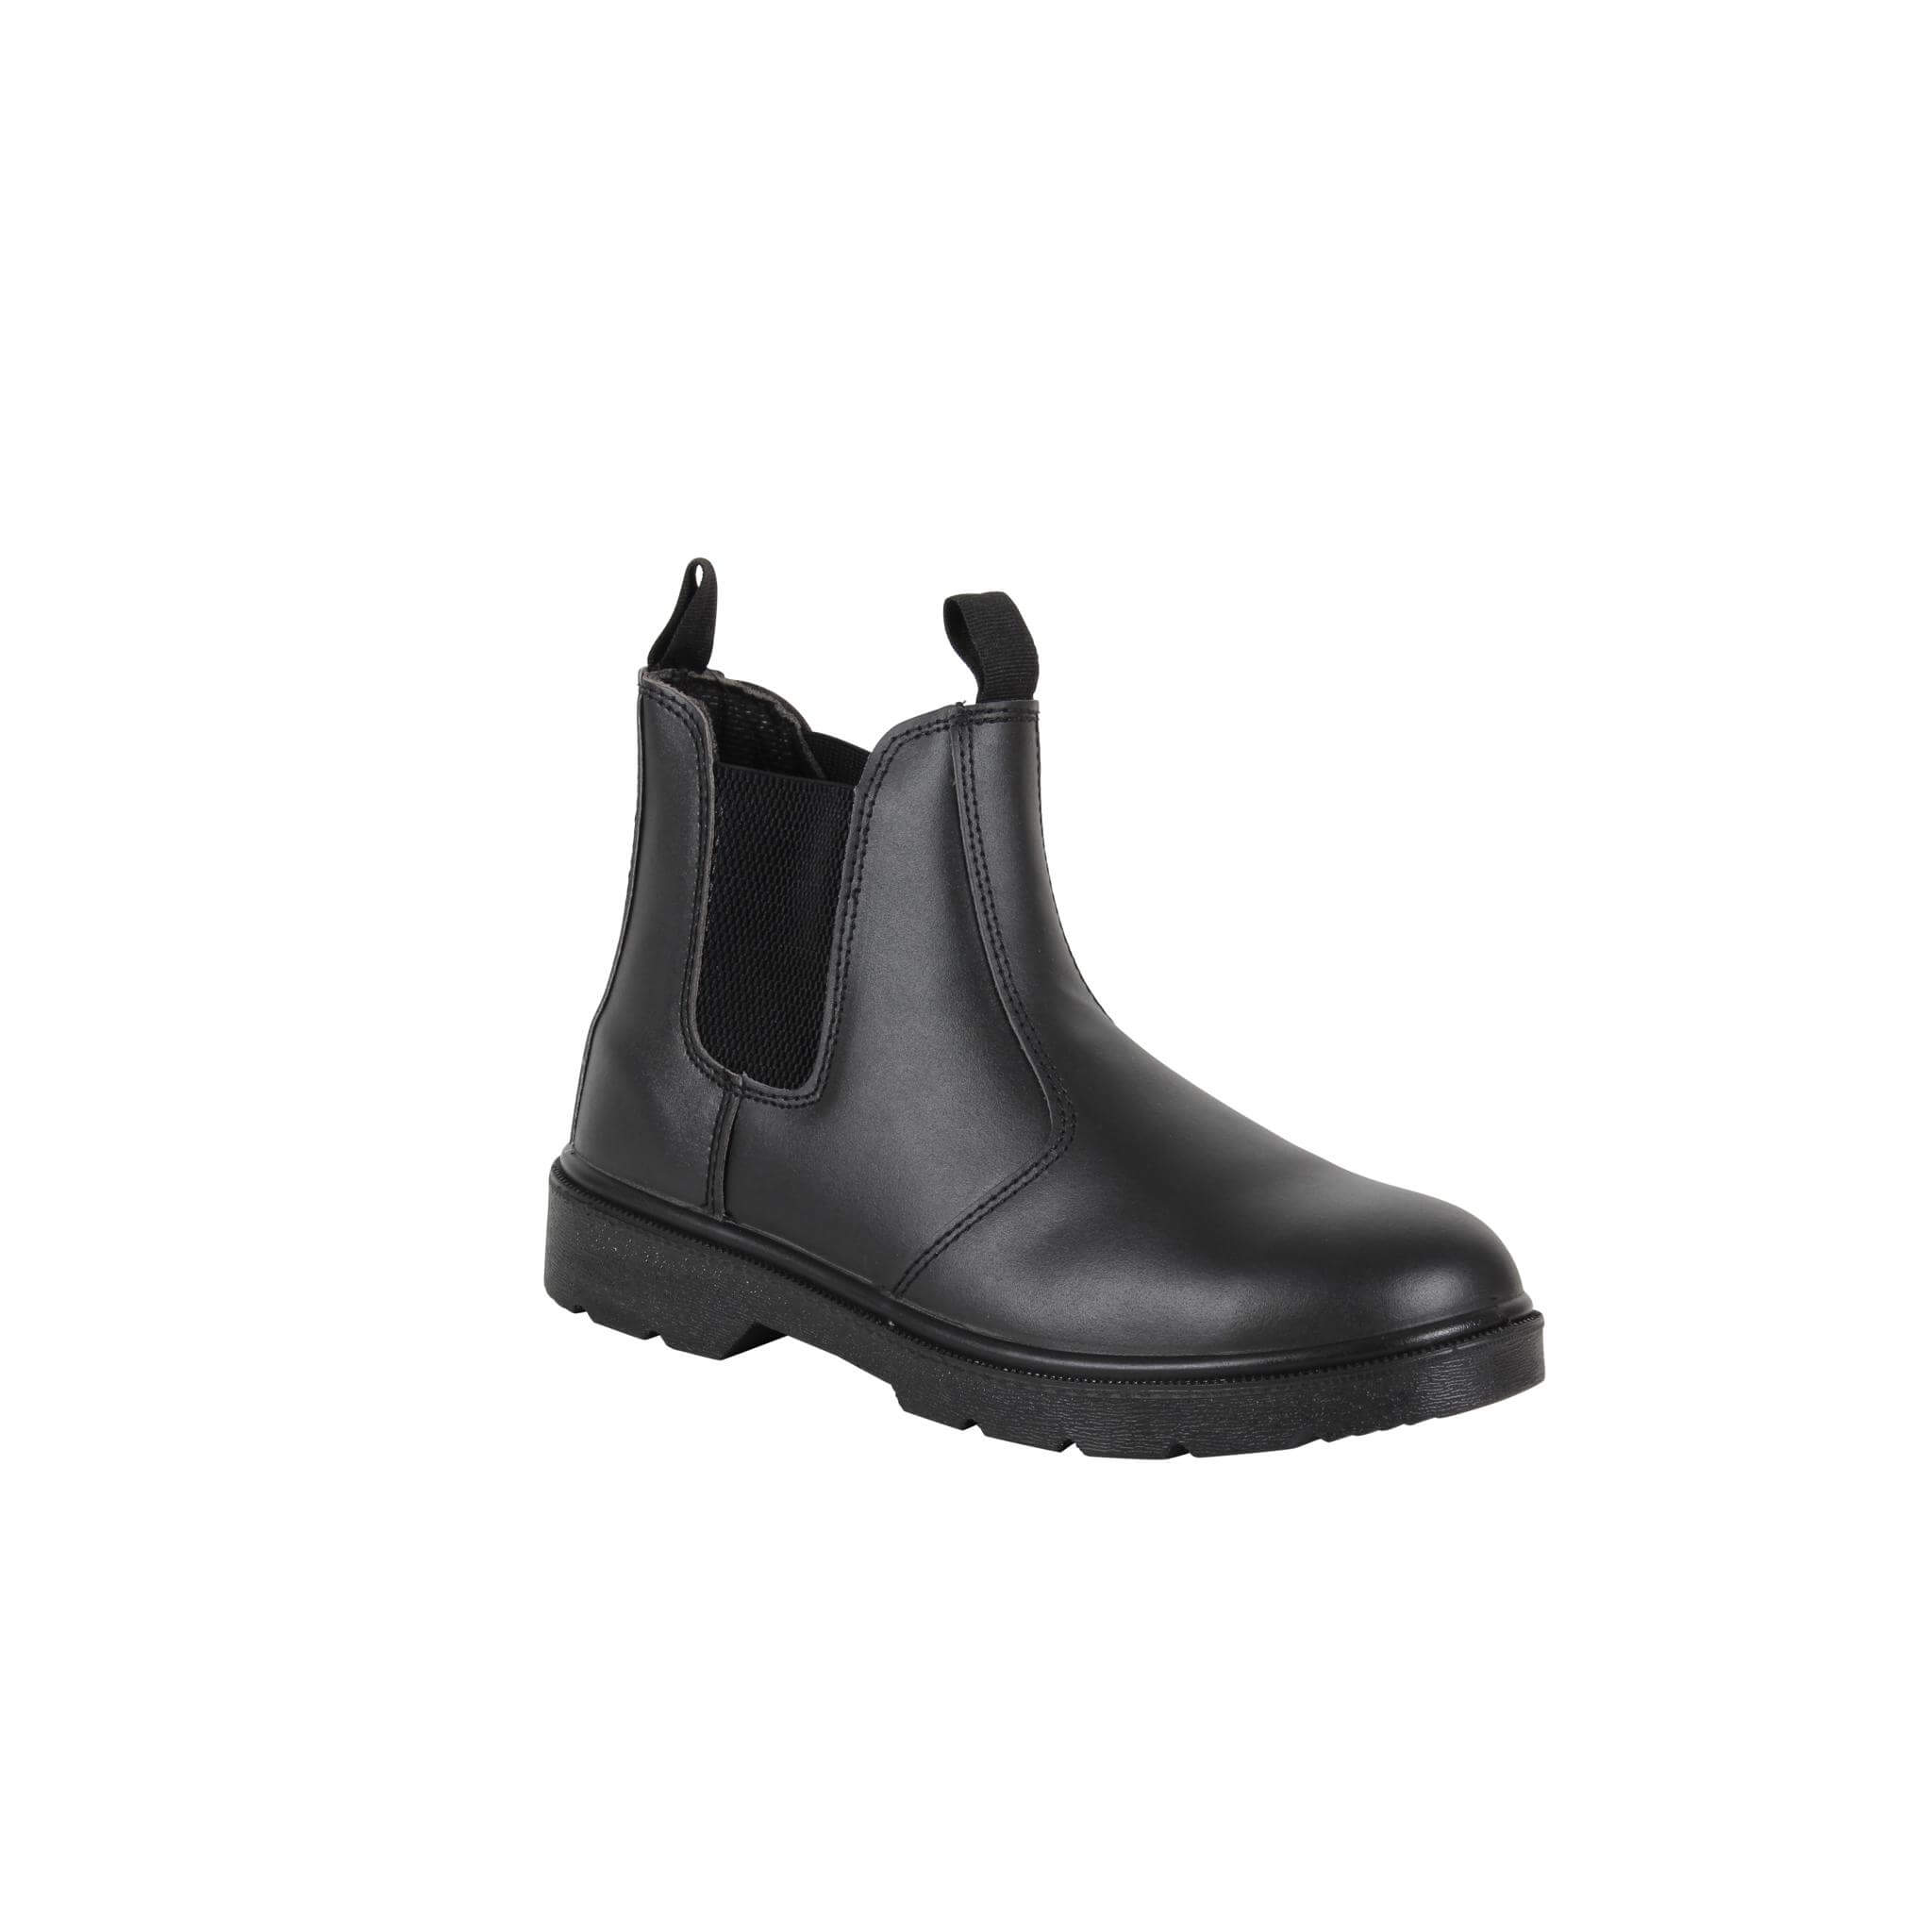 Blackrock Dealer Safety Boots - Sale